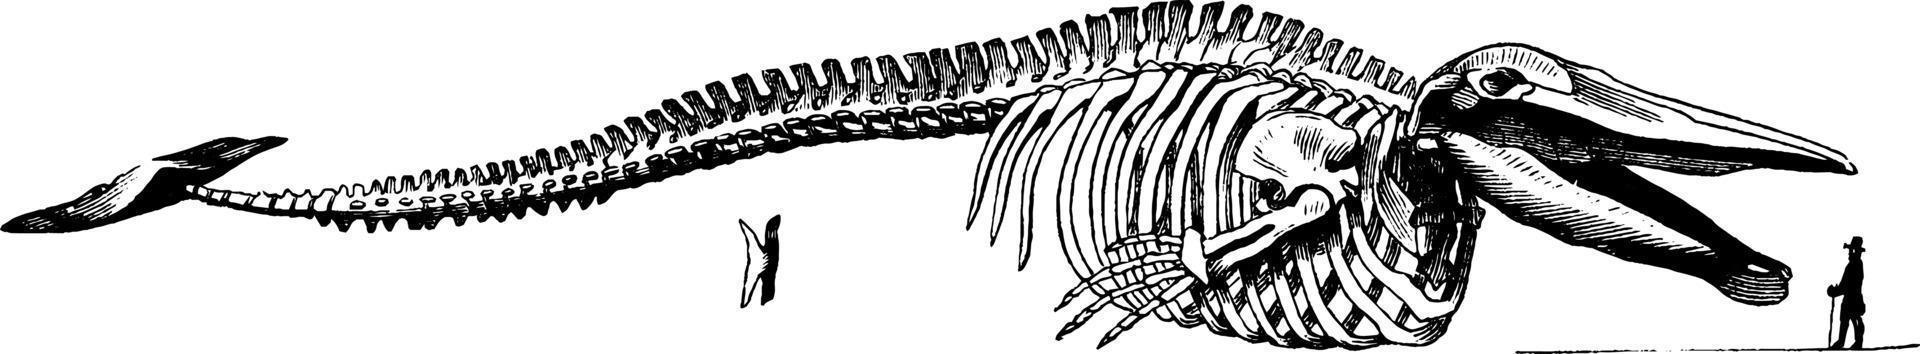 Whale skeleton, vintage illustration. vector